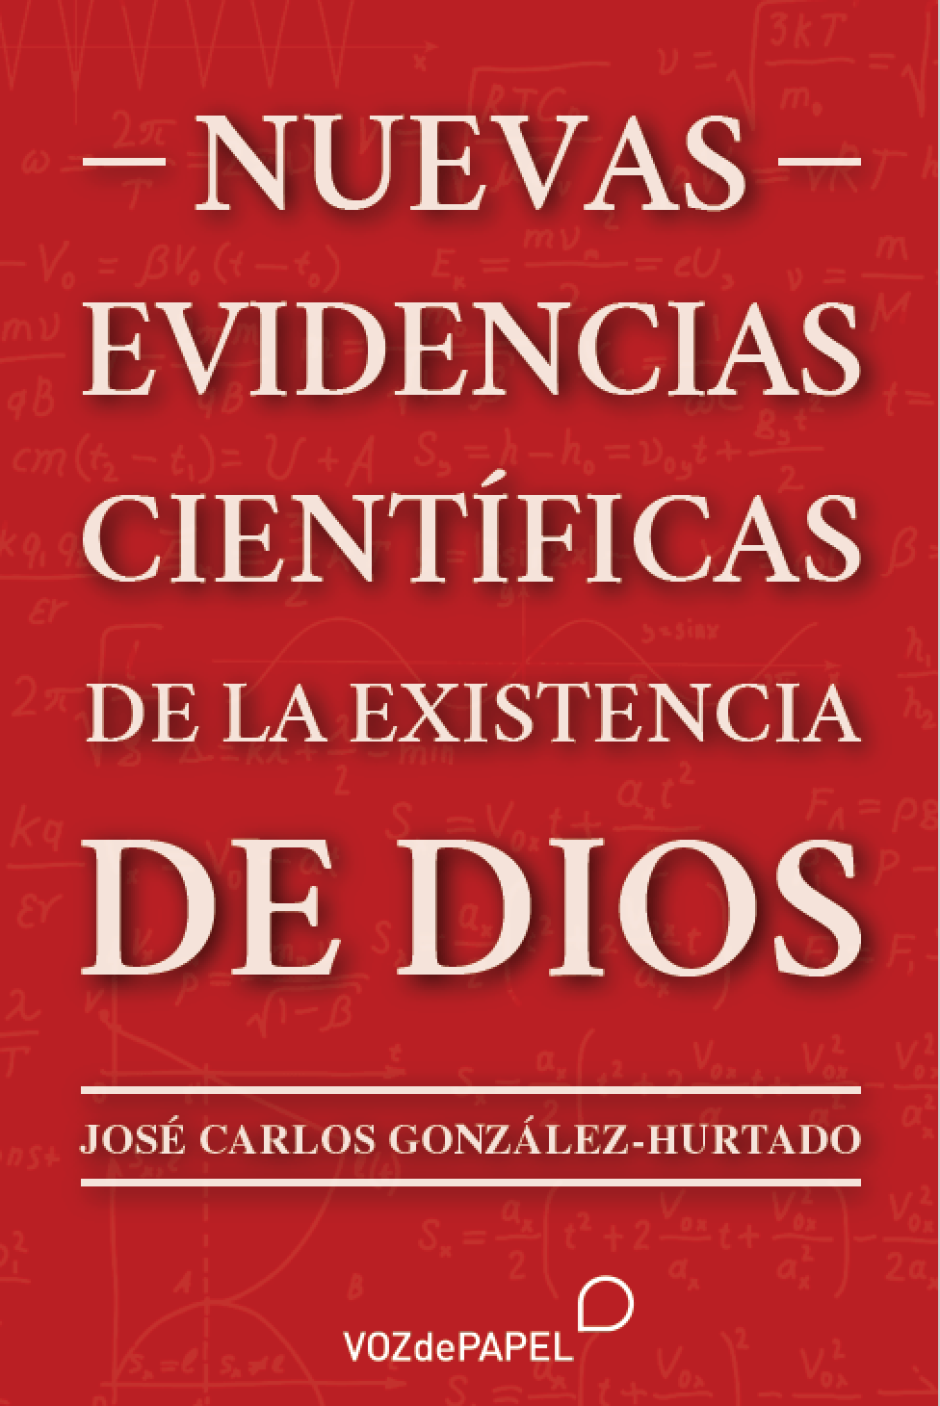 Portada del libro de José Carlos González-Hurtado